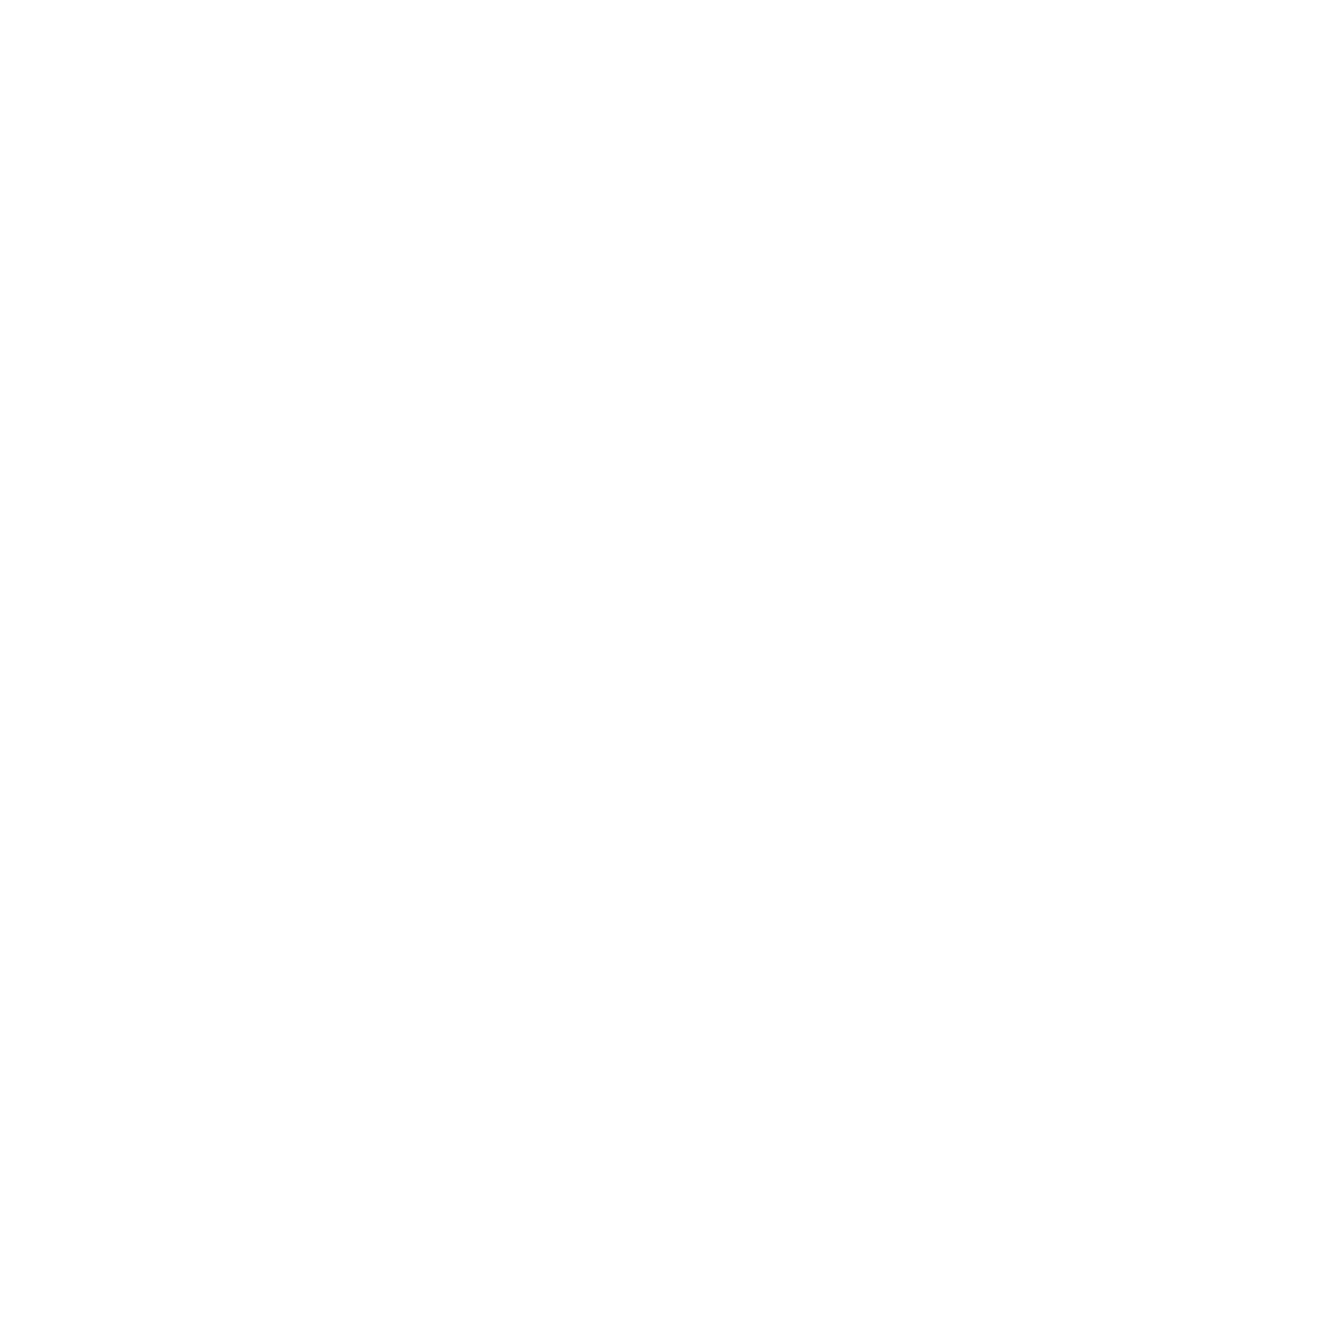 Chirp